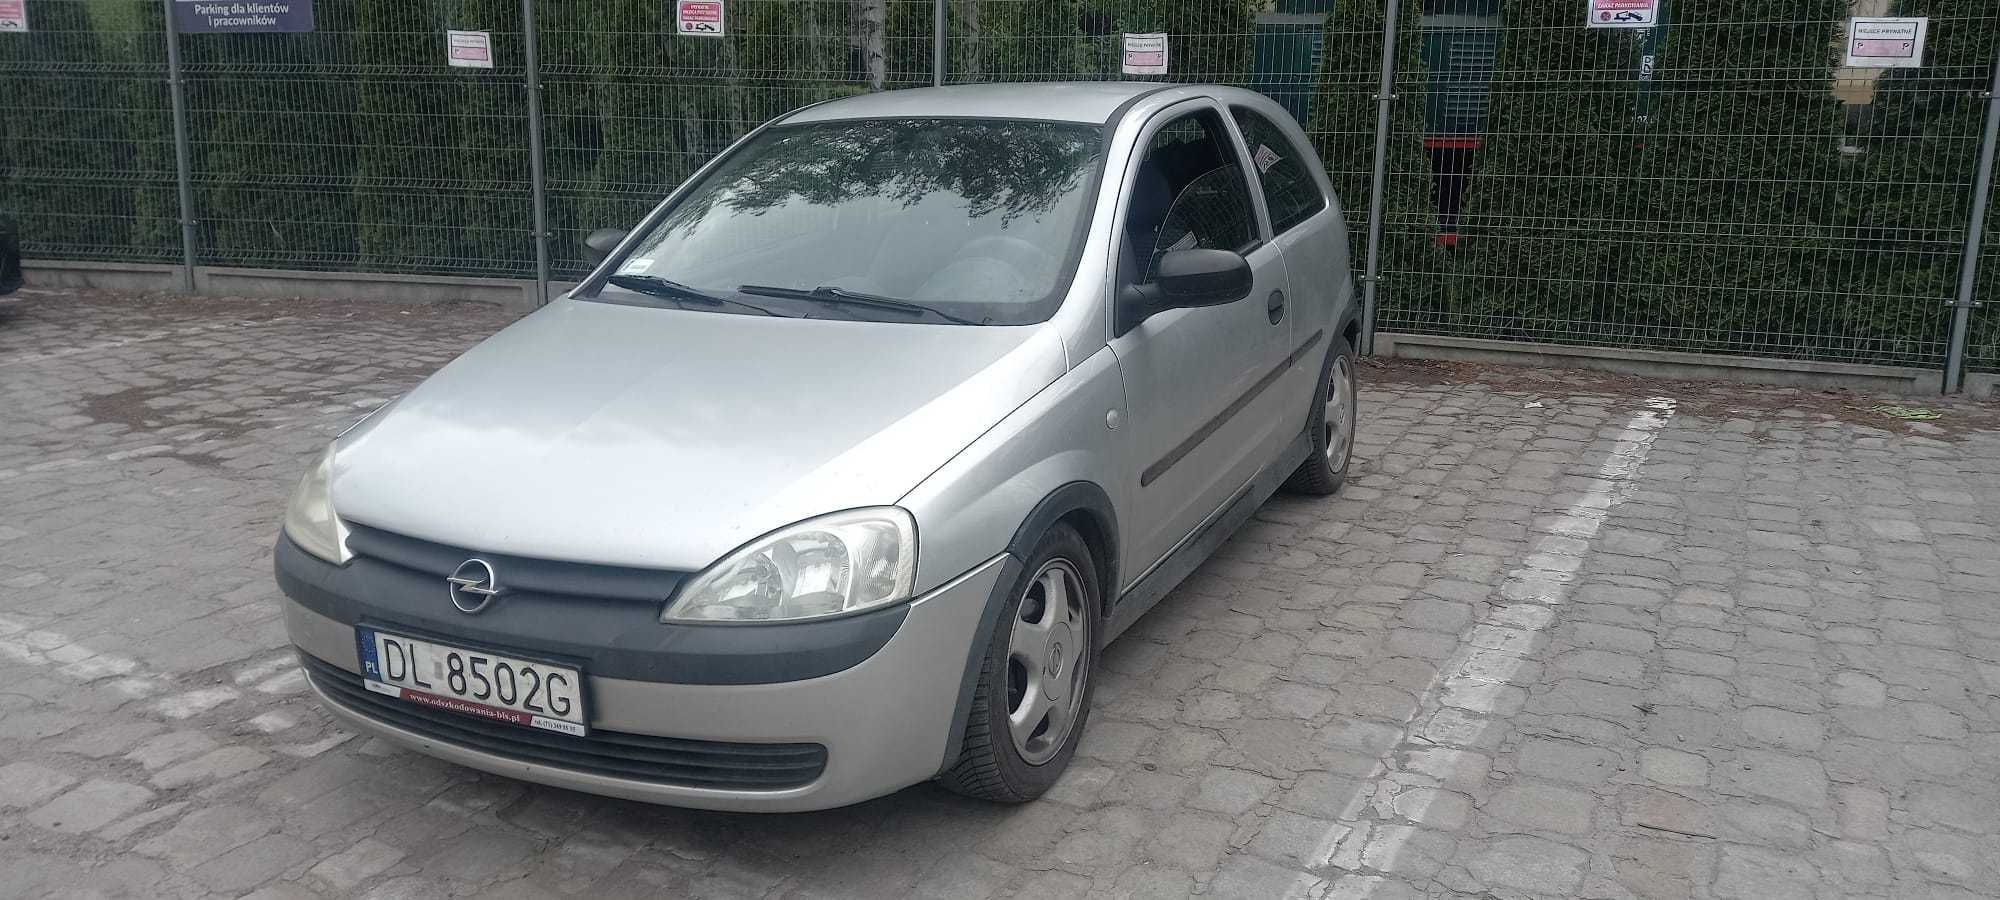 Opel Corsa 2003 rok 1.0 benzyna ,klima ,stan b.dobry 3 drzwiowy